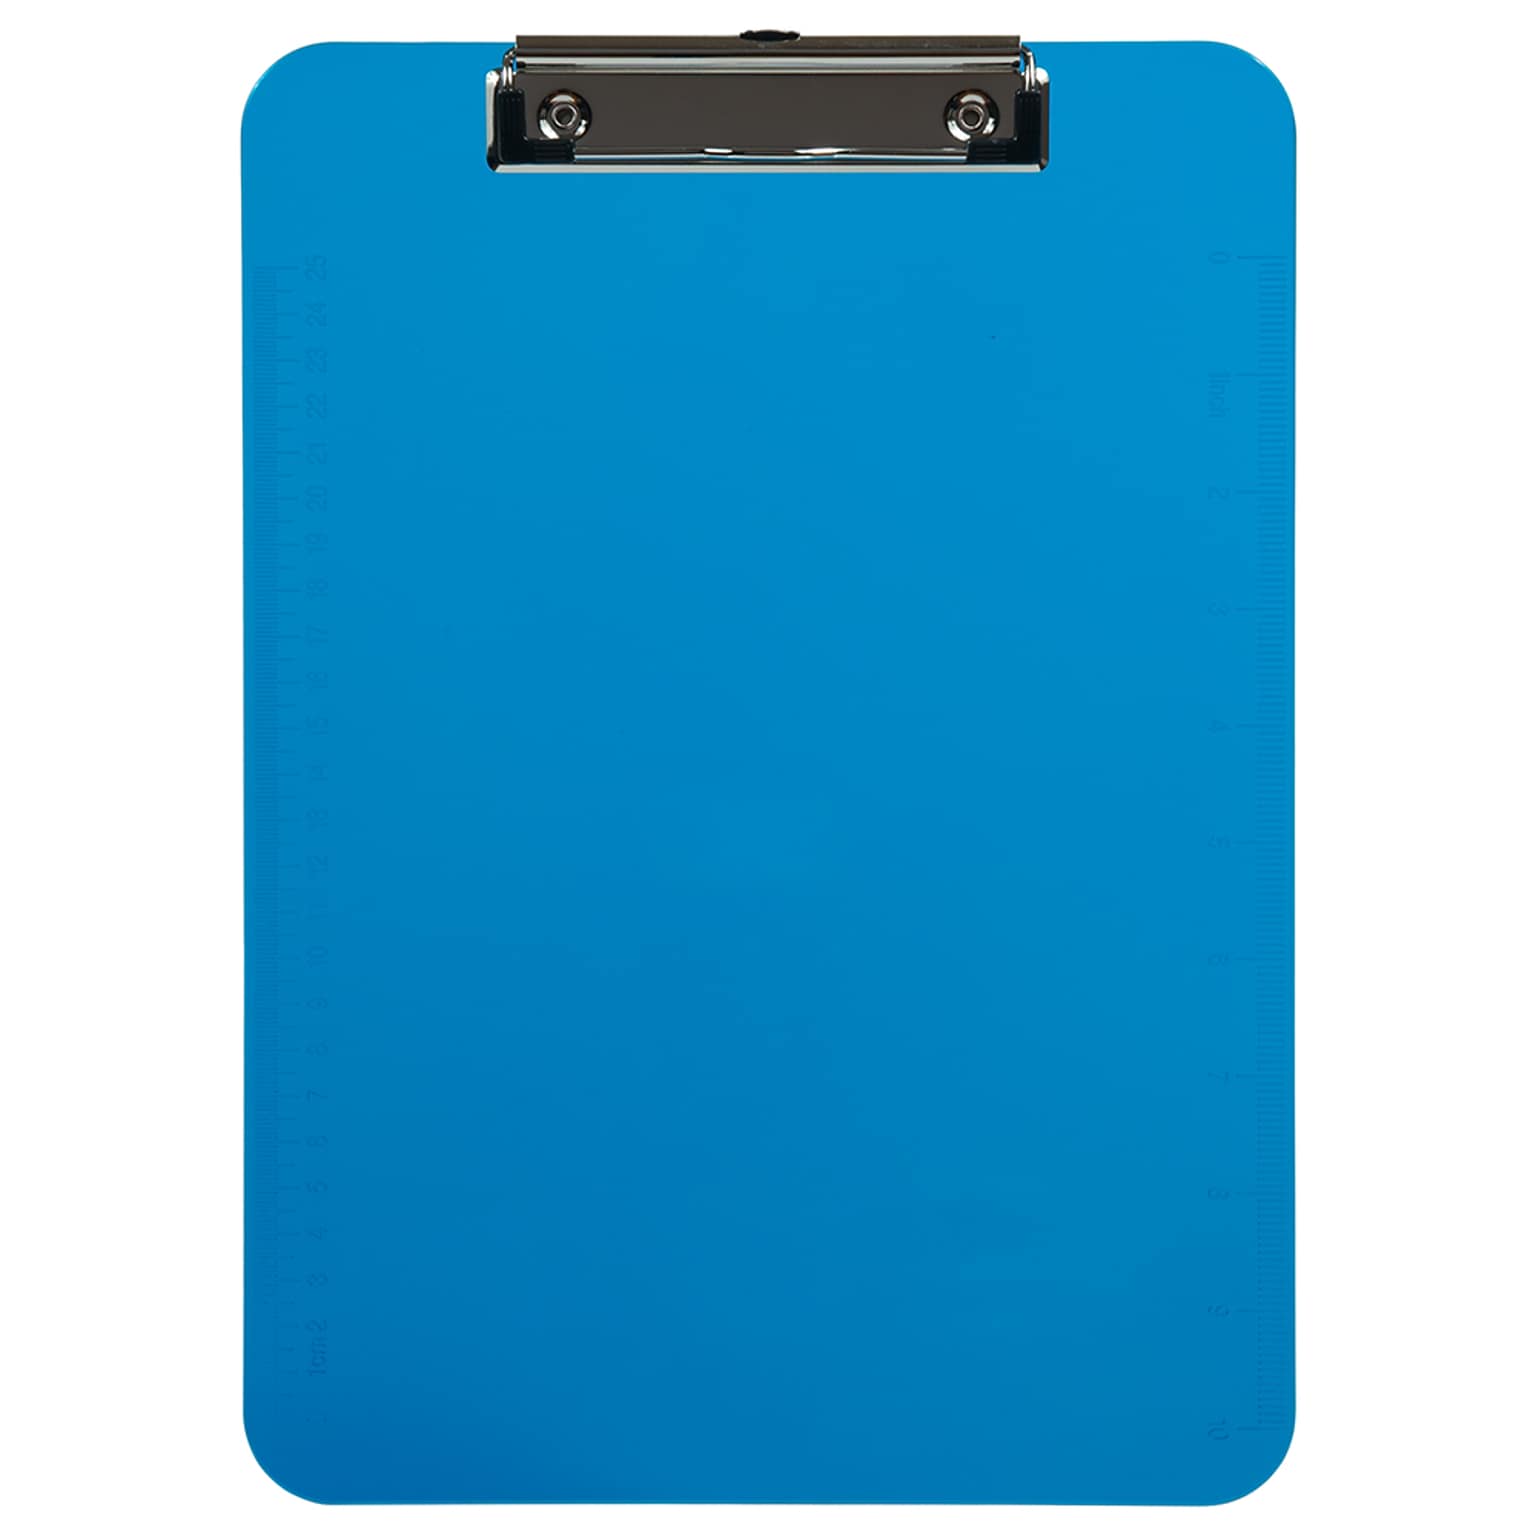 JAM Paper Plastic Clipboard, Letter Size, Blue, 12/Pack (340926882AZ)